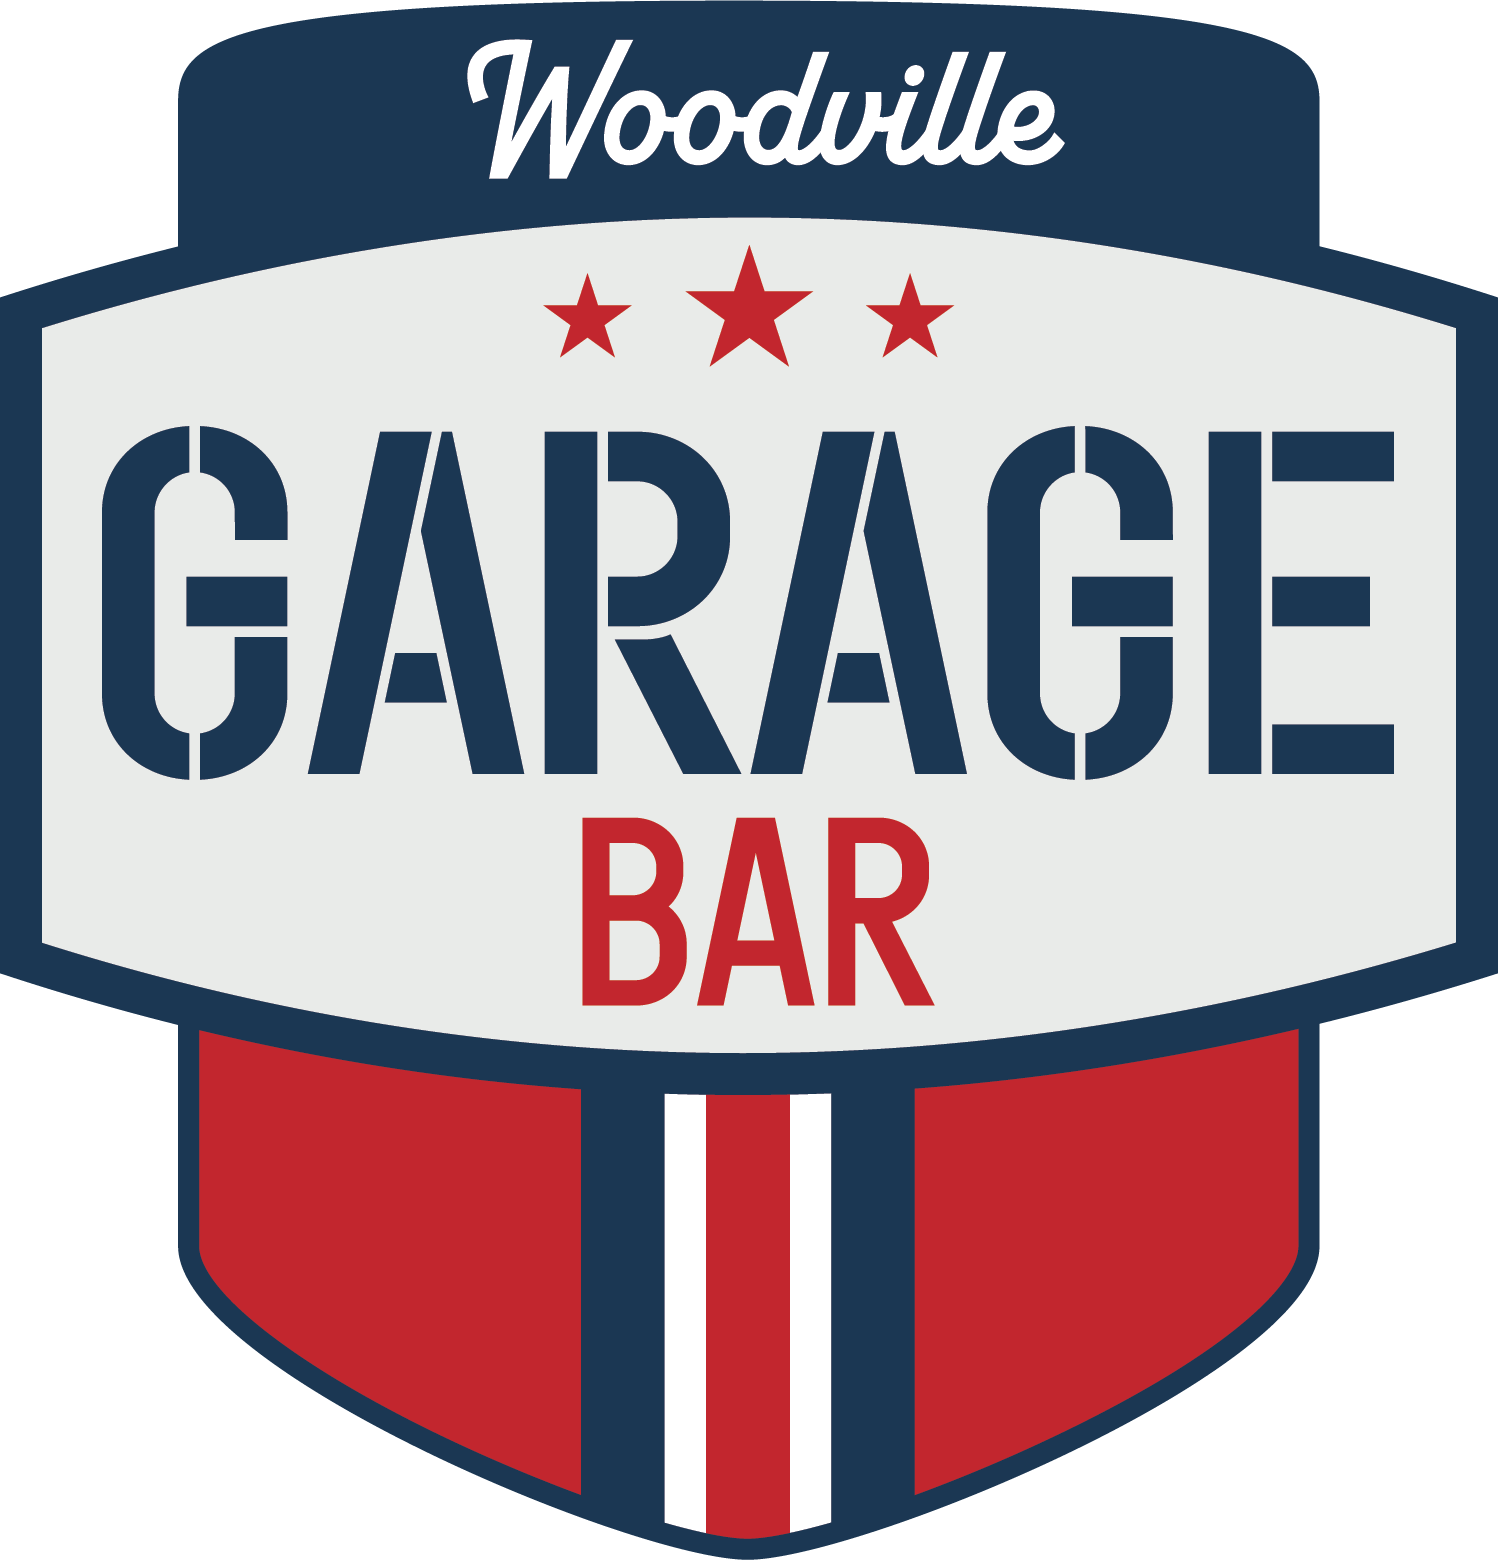 Woodville GarageBar